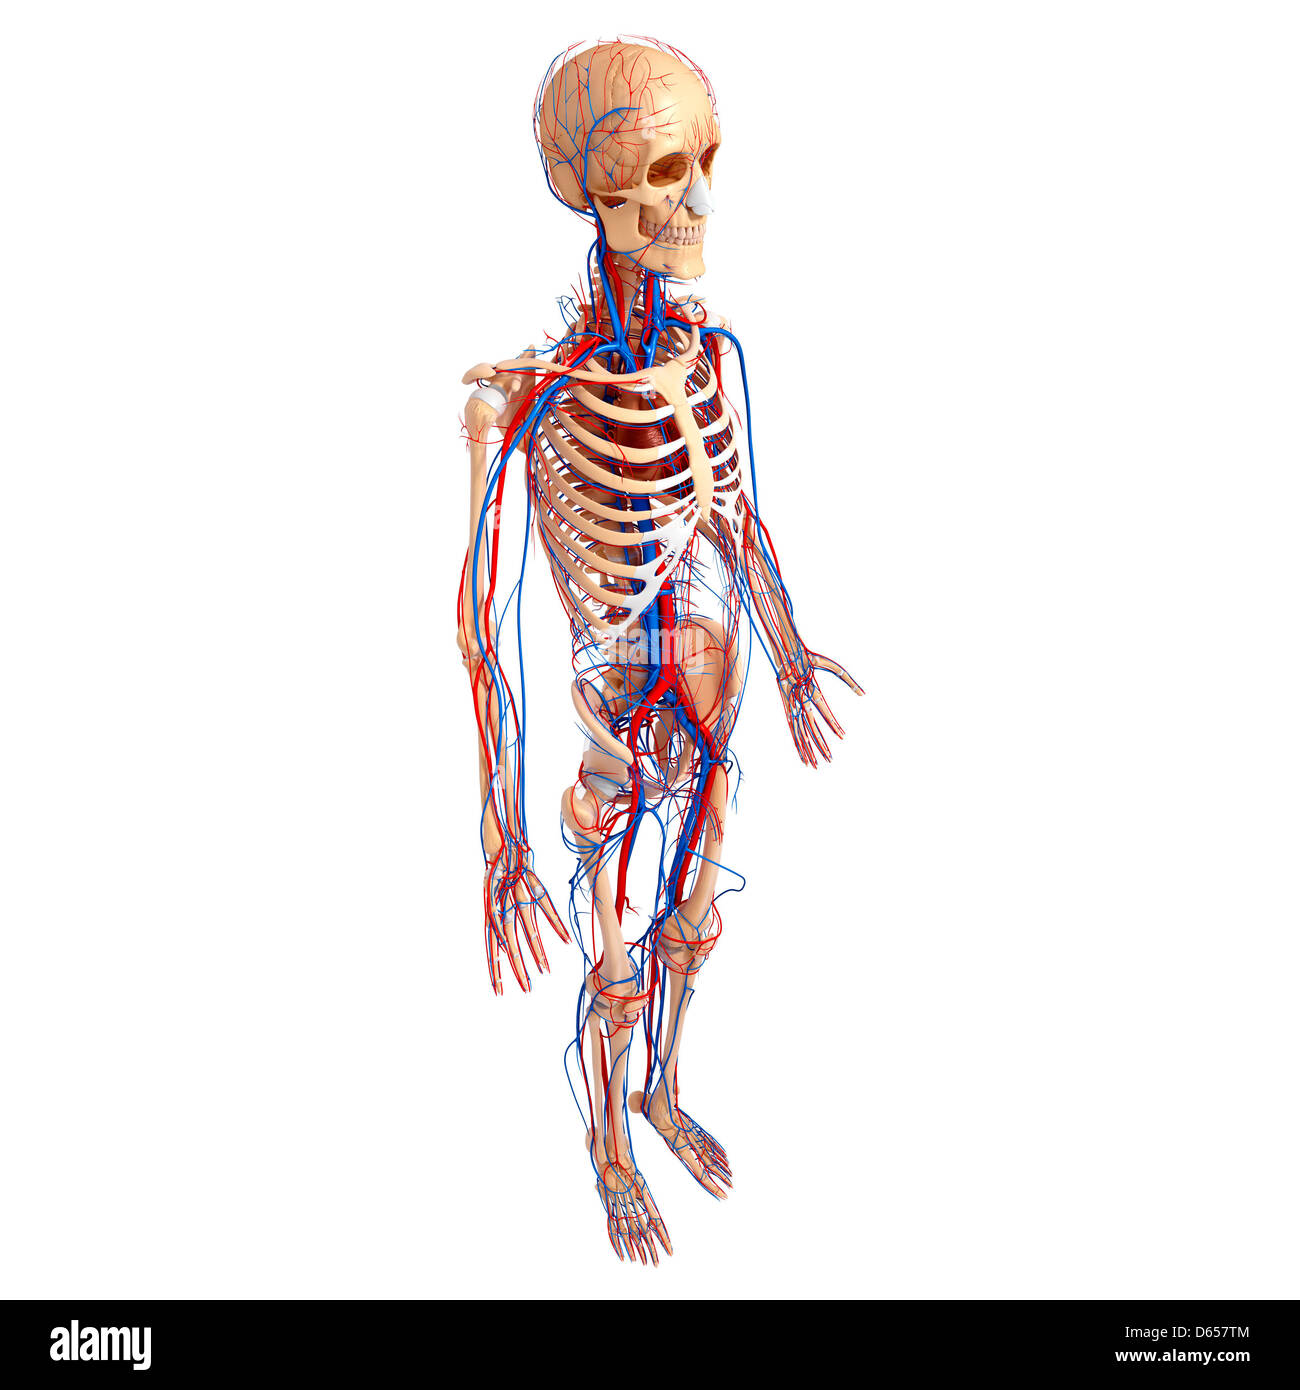 Bones pelvis Cut Out Stock Images & Pictures - Alamy